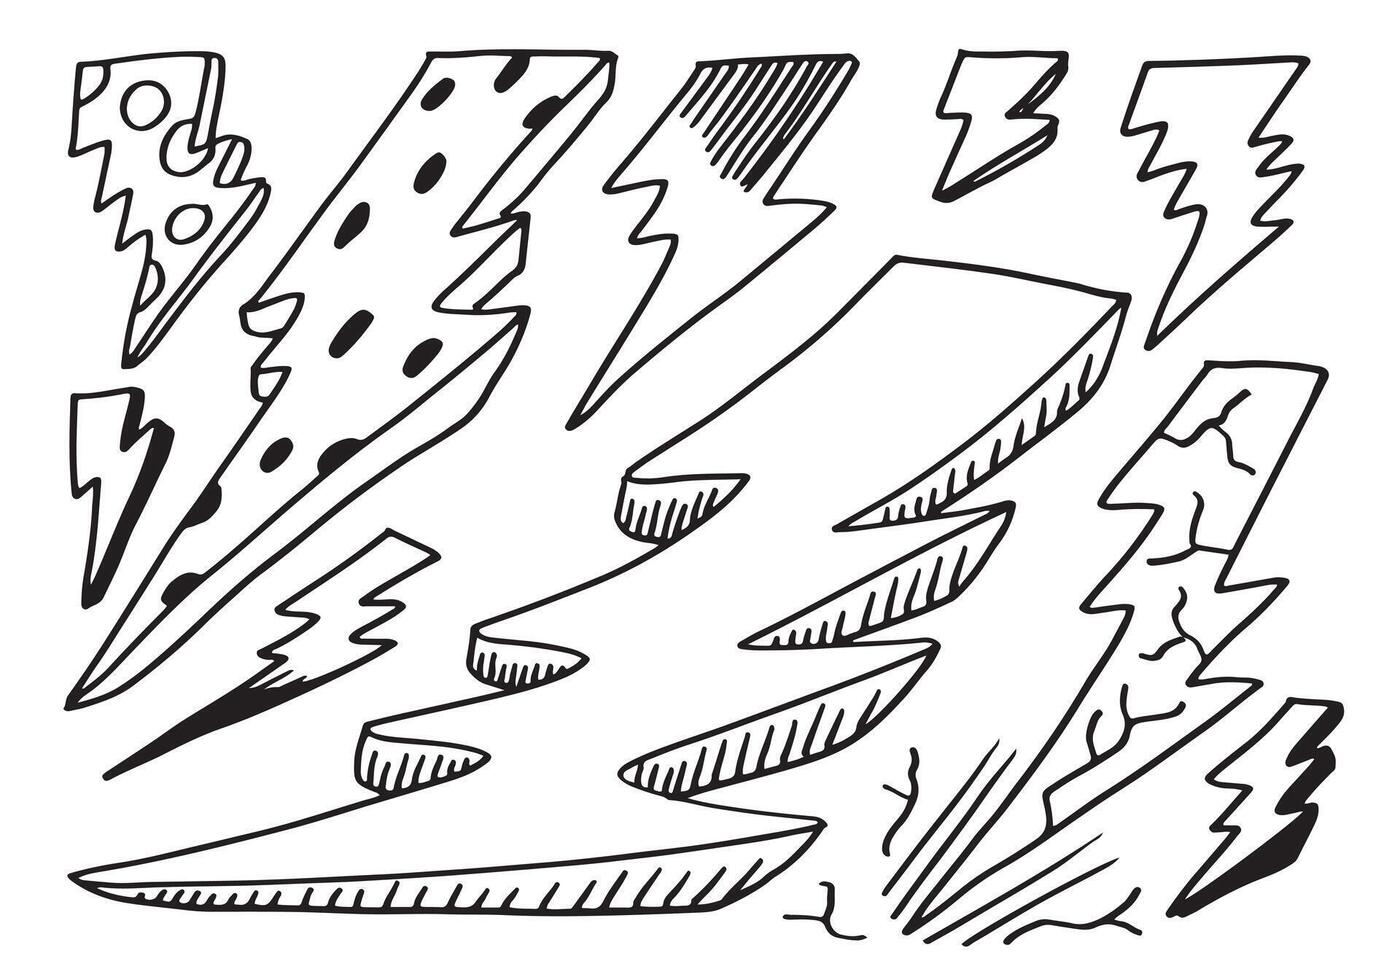 set of hand drawn vector doodle electric lightning bolt symbol sketch illustrations. thunder symbol doodle icon.